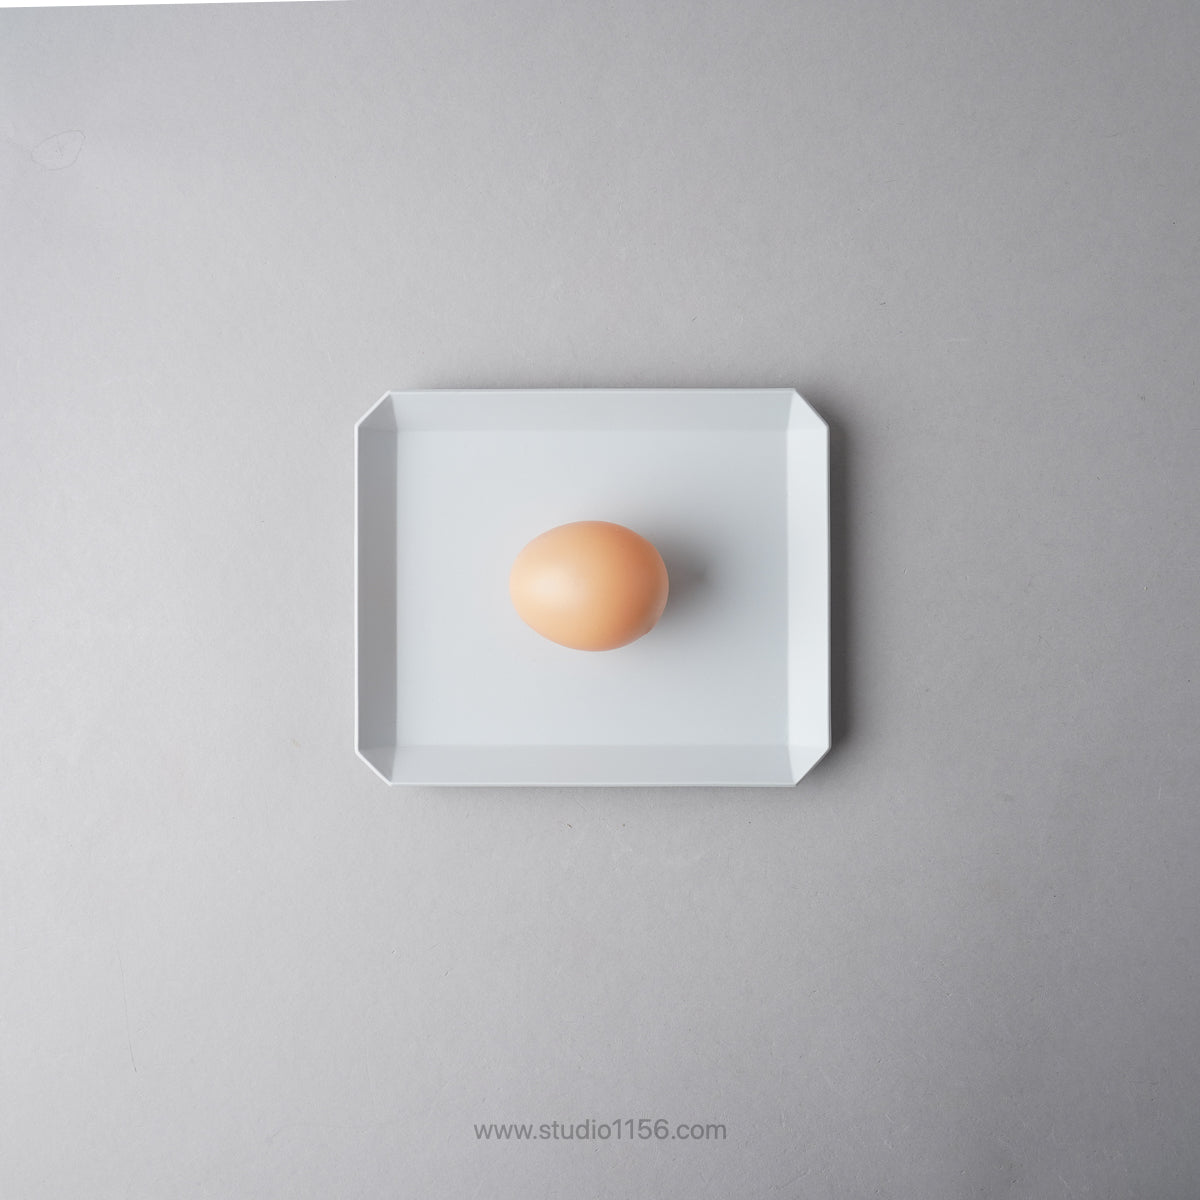 有田焼 スクエアプレート プレーン グレー / TY Square Plate Plain Gray 165 1616 / Arita Japan Studio1156